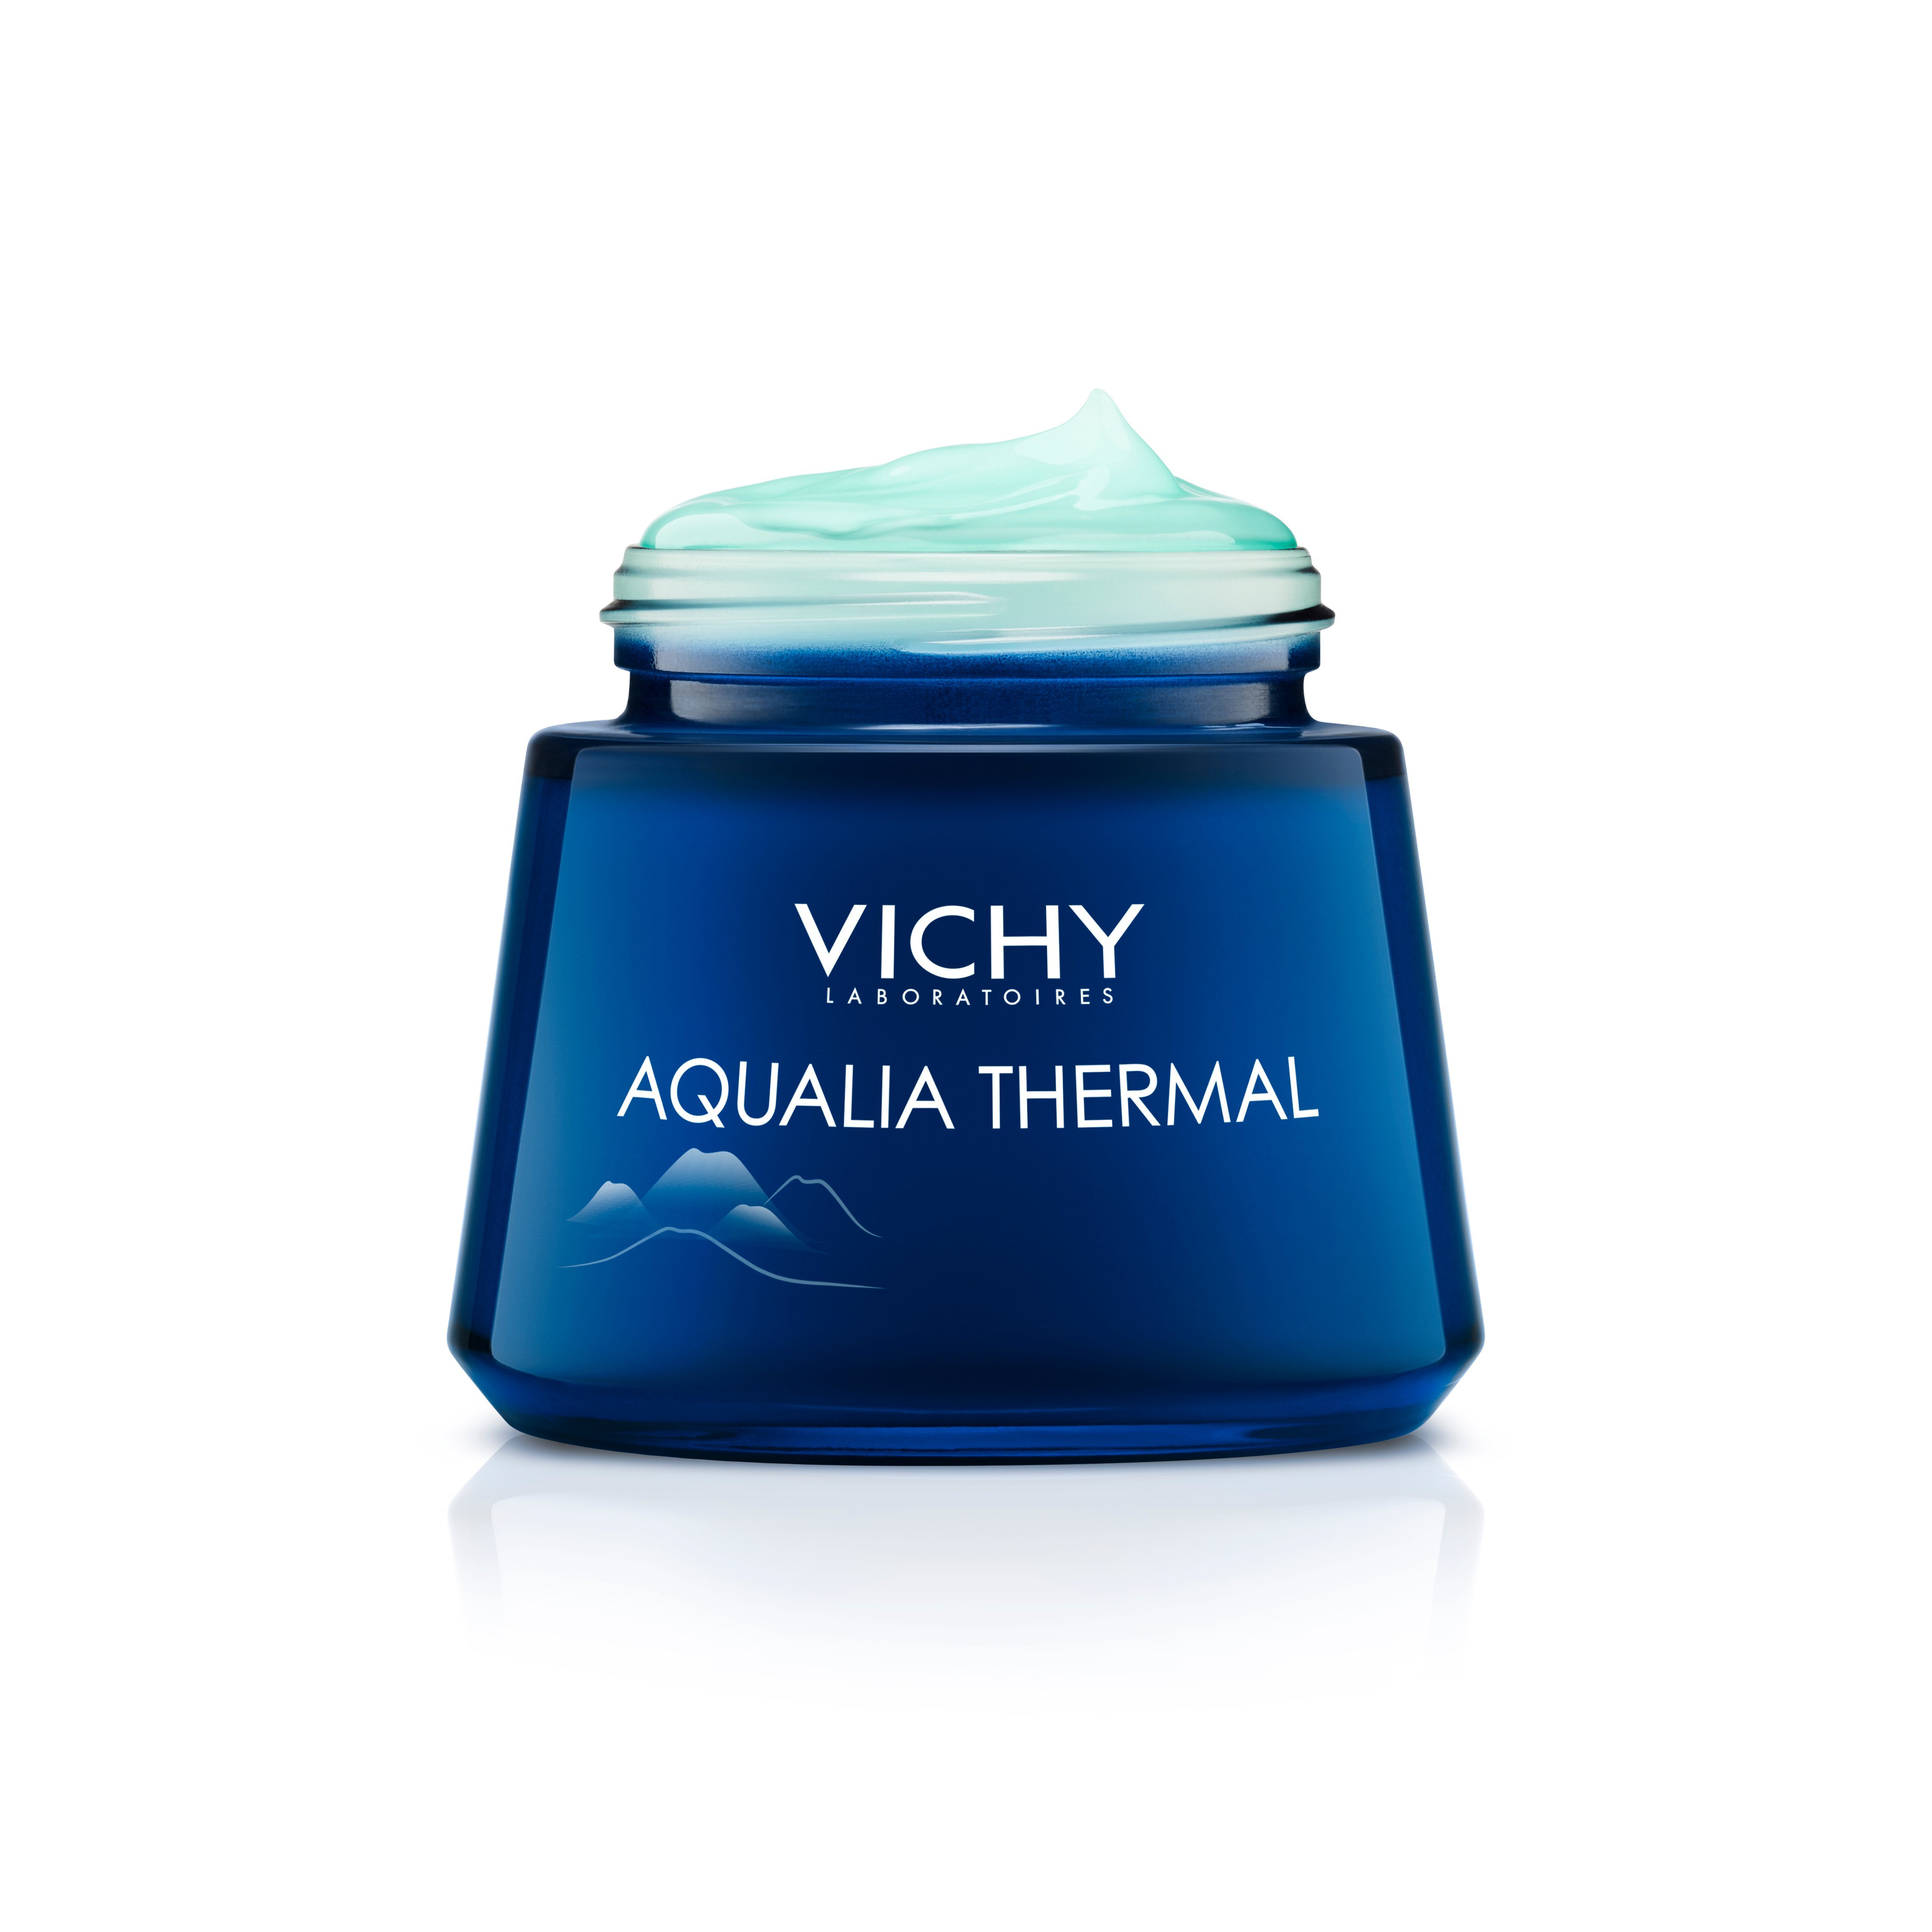 Ночной СПА крем-гель Vichy Aqualia Thermal, для глубокого увлажнения кожи лица, 75 мл - фото 5